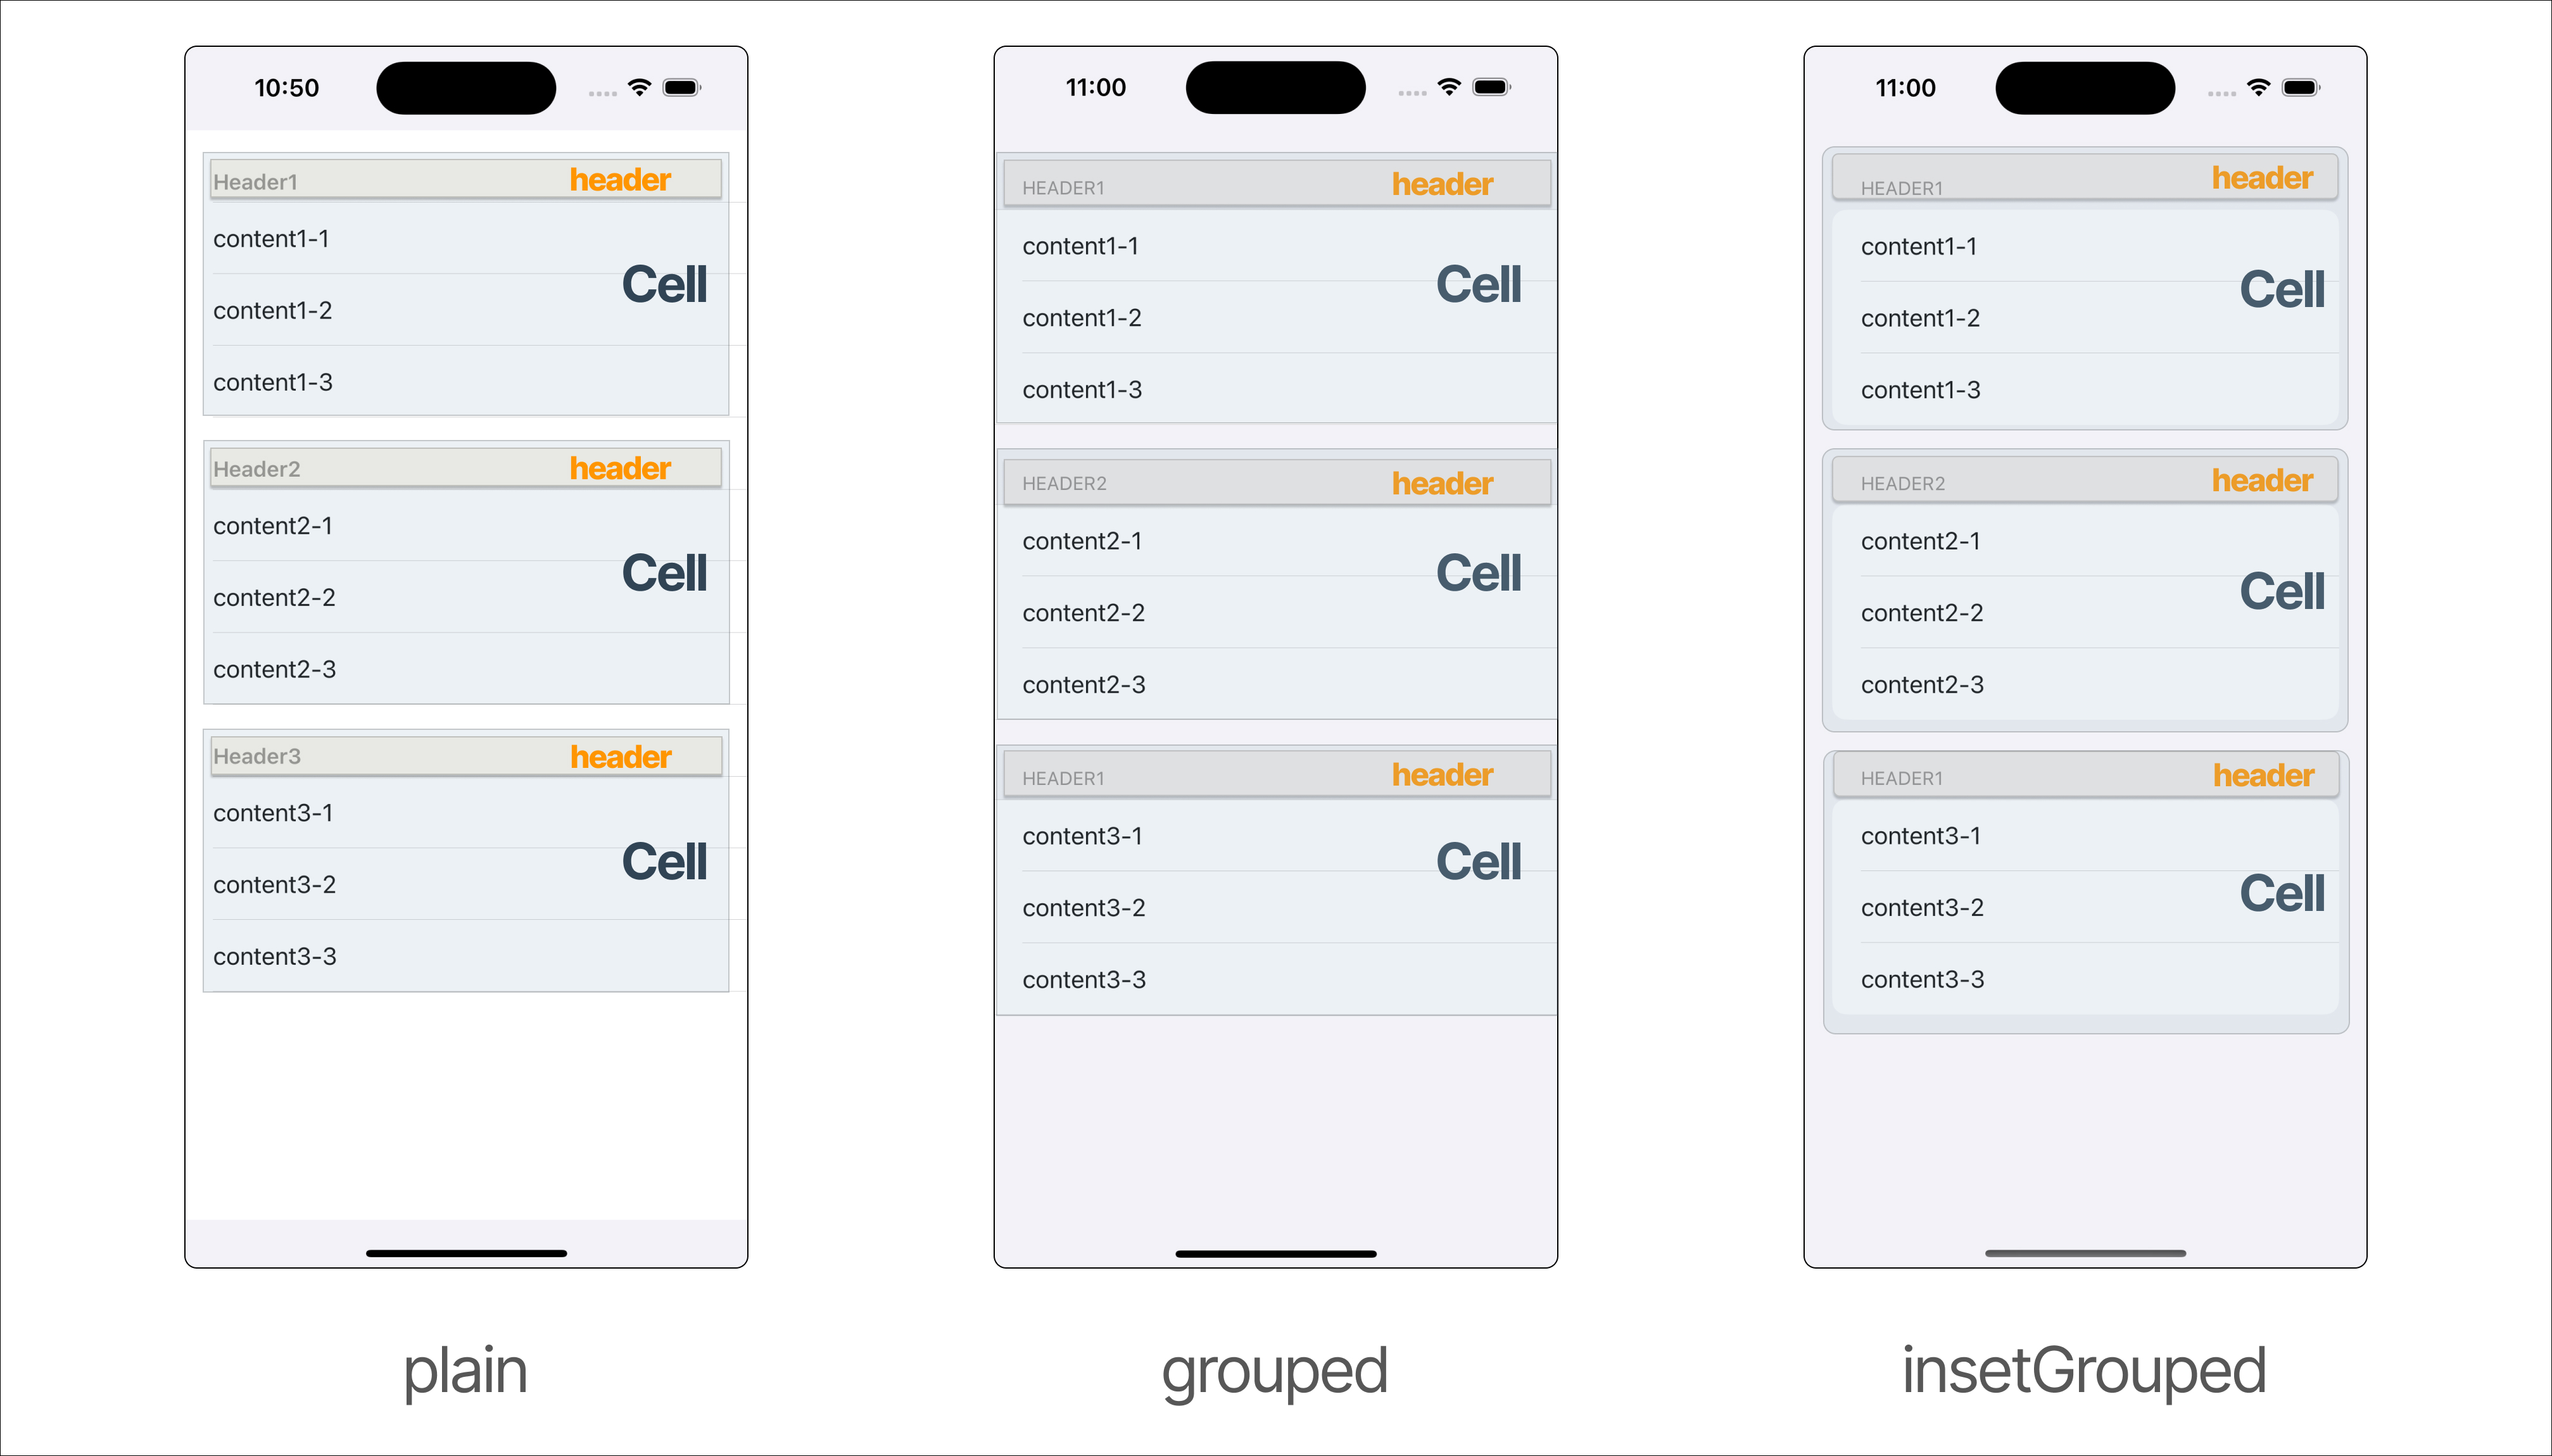 테이블 뷰 타입(plain&#44; grouped&#44; insetGrouped) 및 Cell 객체(row+ header)